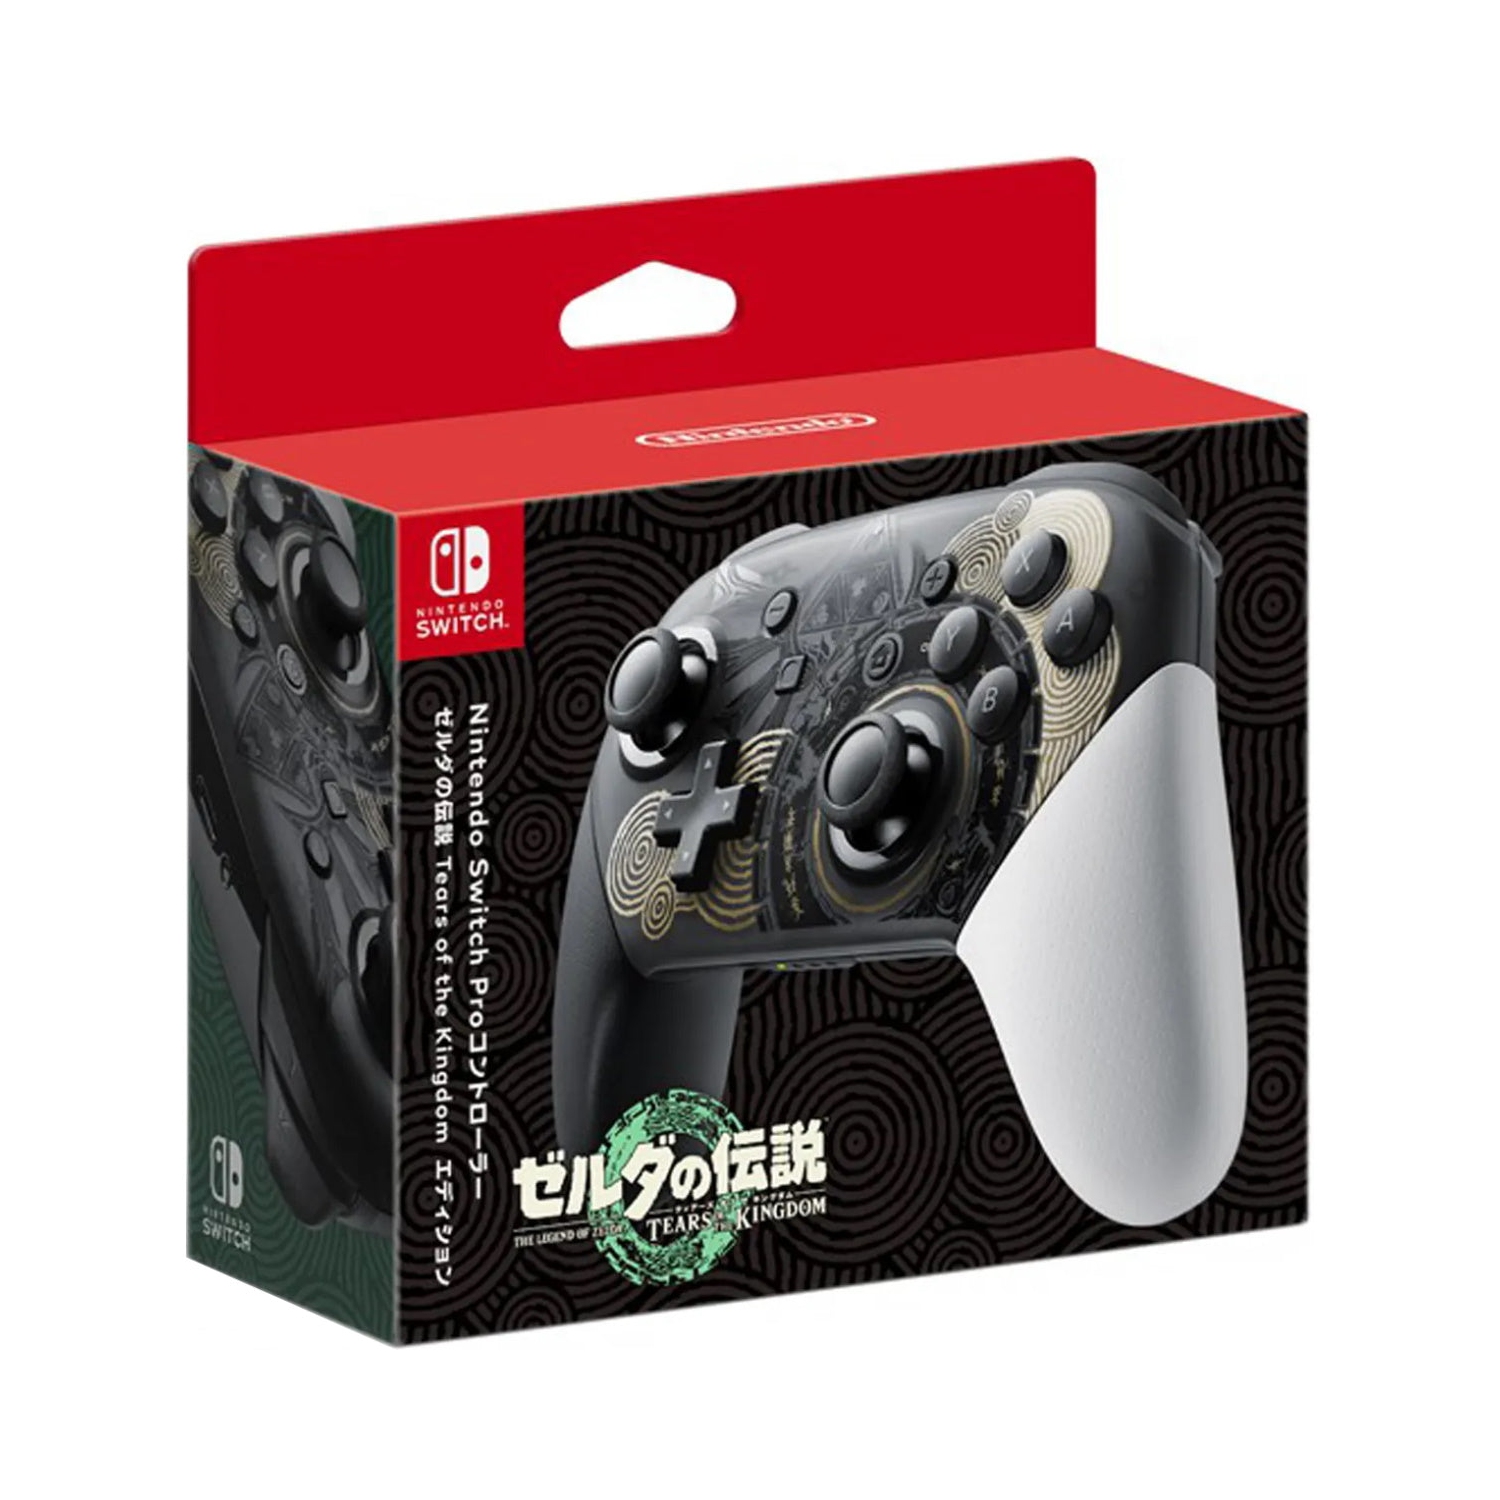 Pro Controller for Nintendo Wii U Black WII U - GA - Best Buy